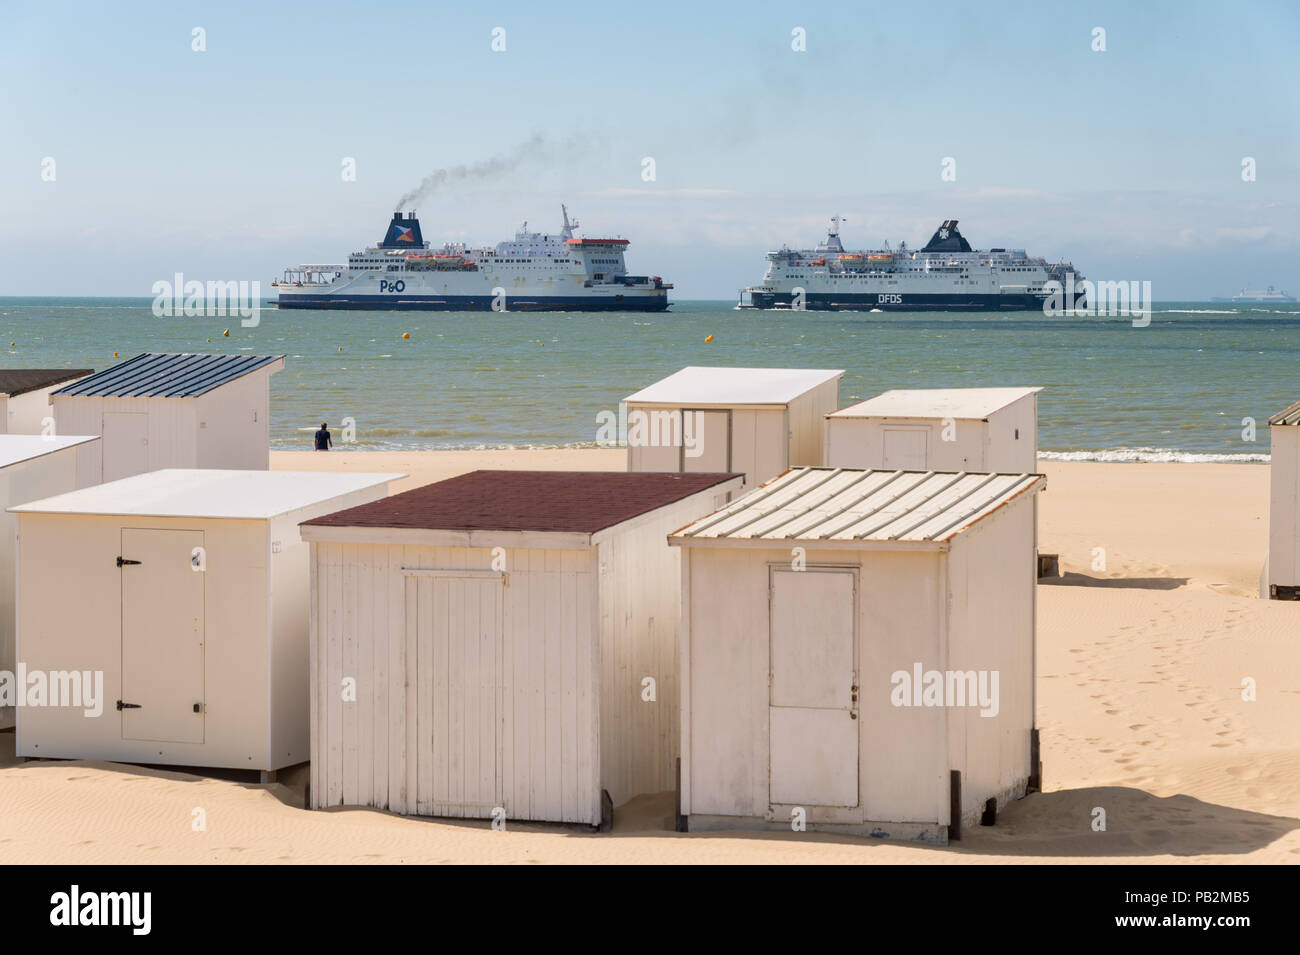 Calais, France - 19 juin 2018 : cabines de plage et DFDS / P&O ferries qui traversent la Manche. Banque D'Images